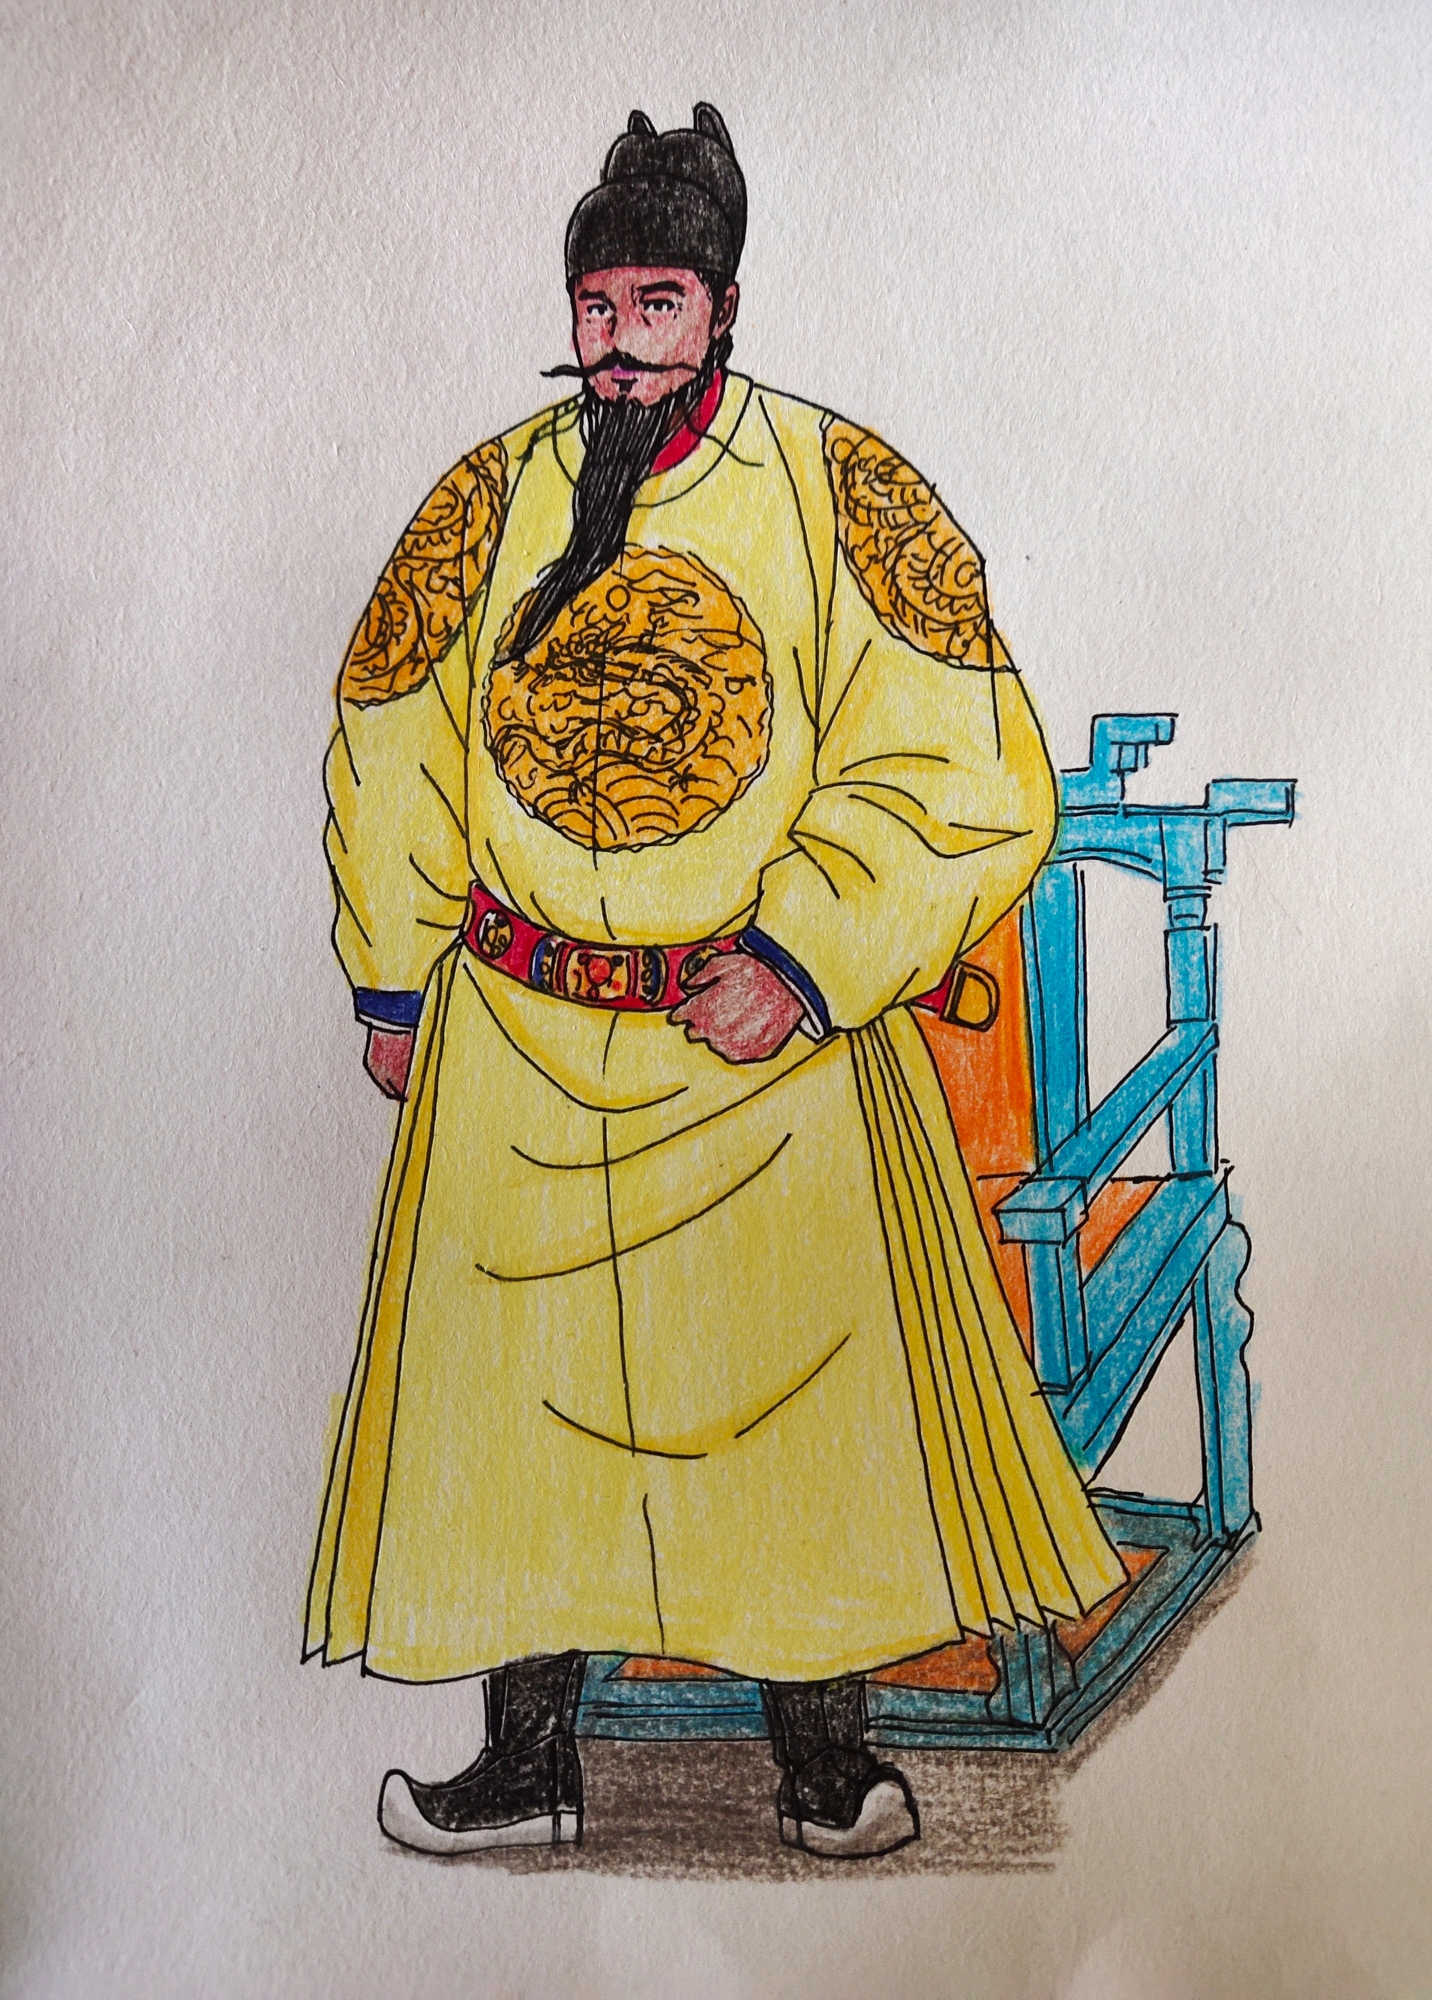 画的是明朝的第二位皇帝(实际上是第三个,因为还有一个建文帝)朱棣,对